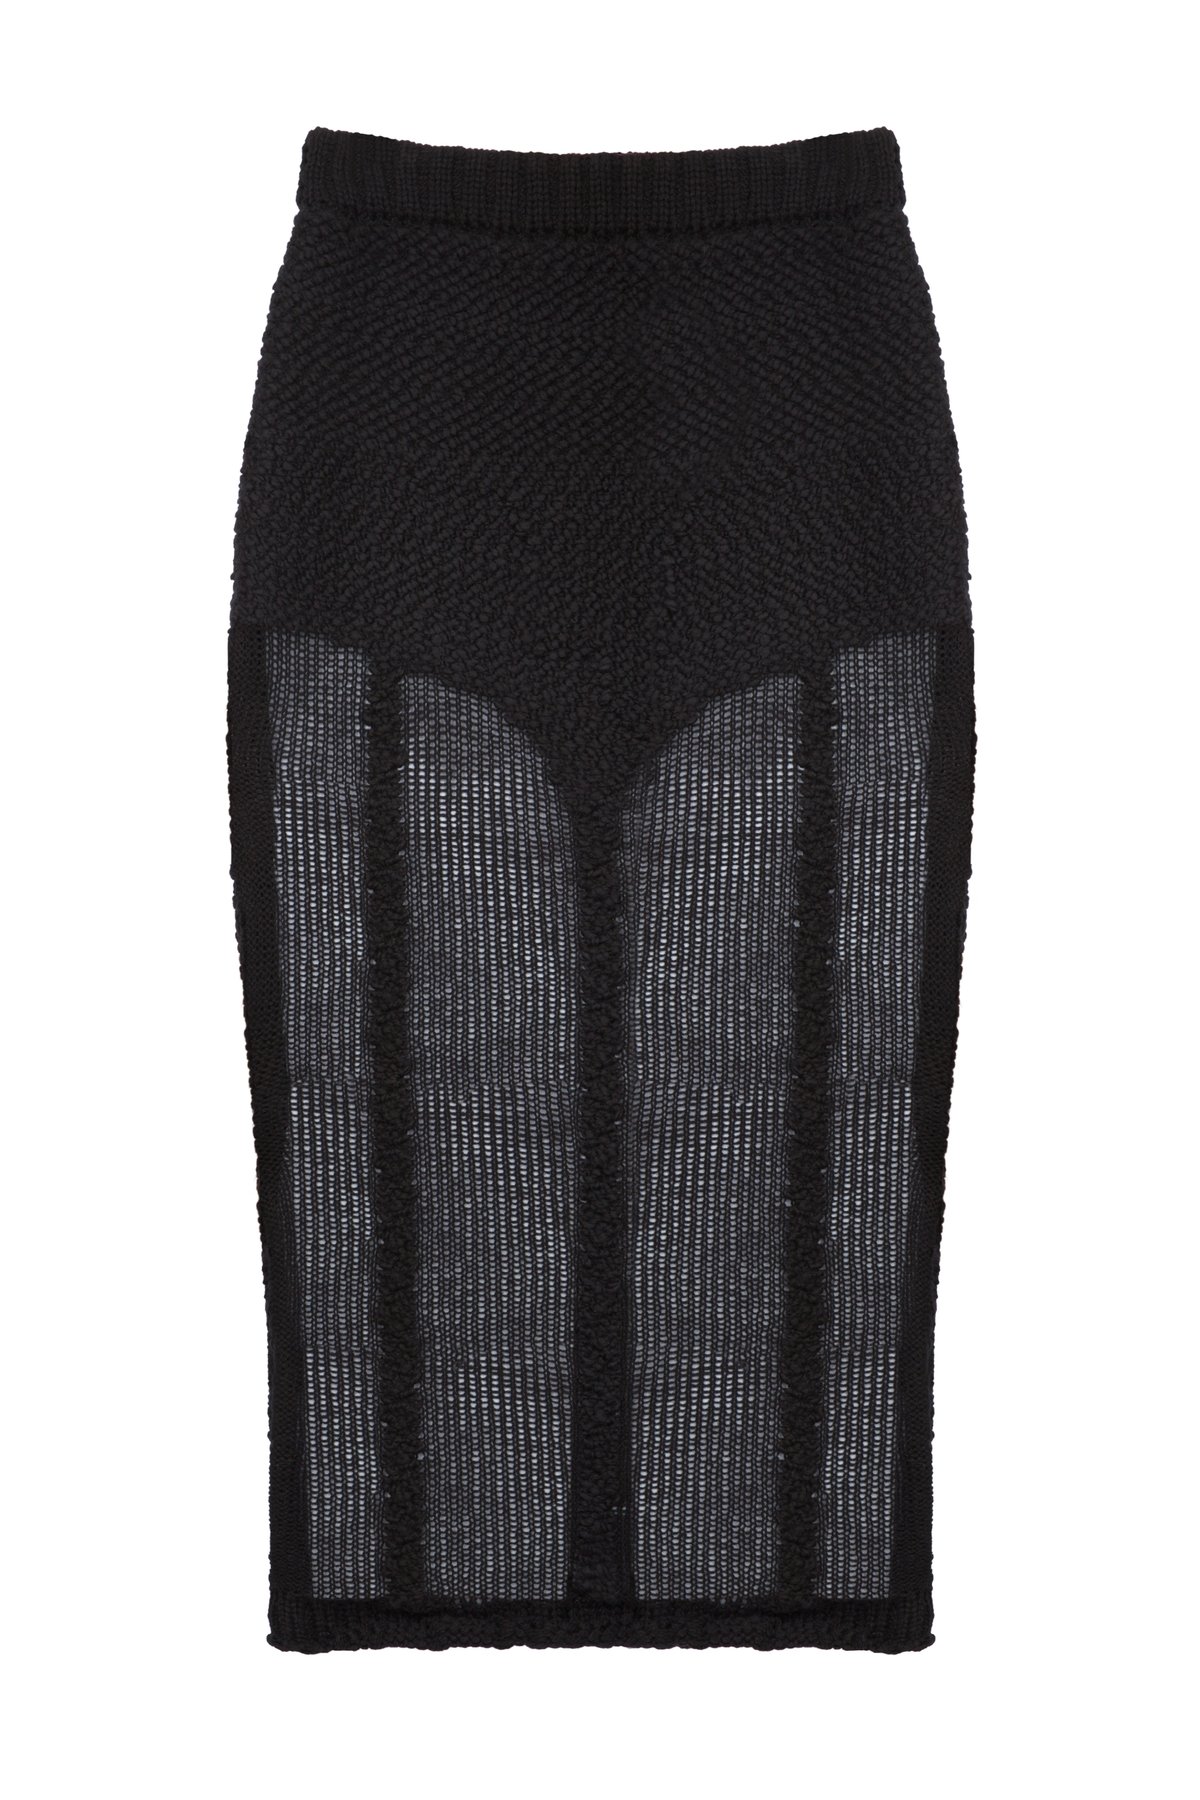 Image of Hand Knit Lingerie Skirt